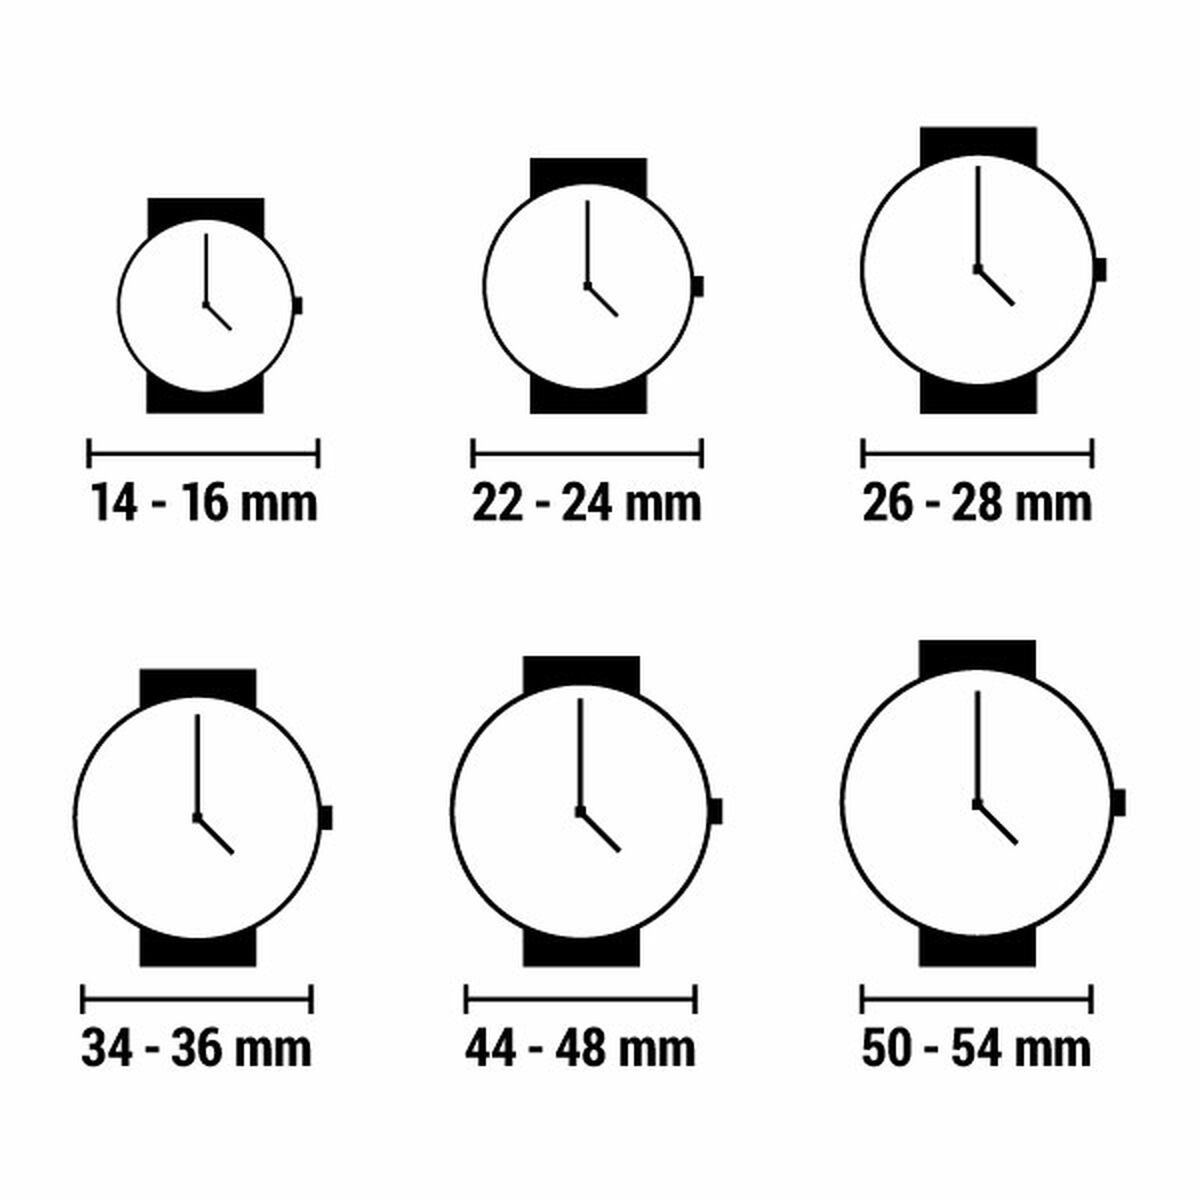 Horloge Dames Juicy Couture JC1334BKGP (Ø 38 mm)